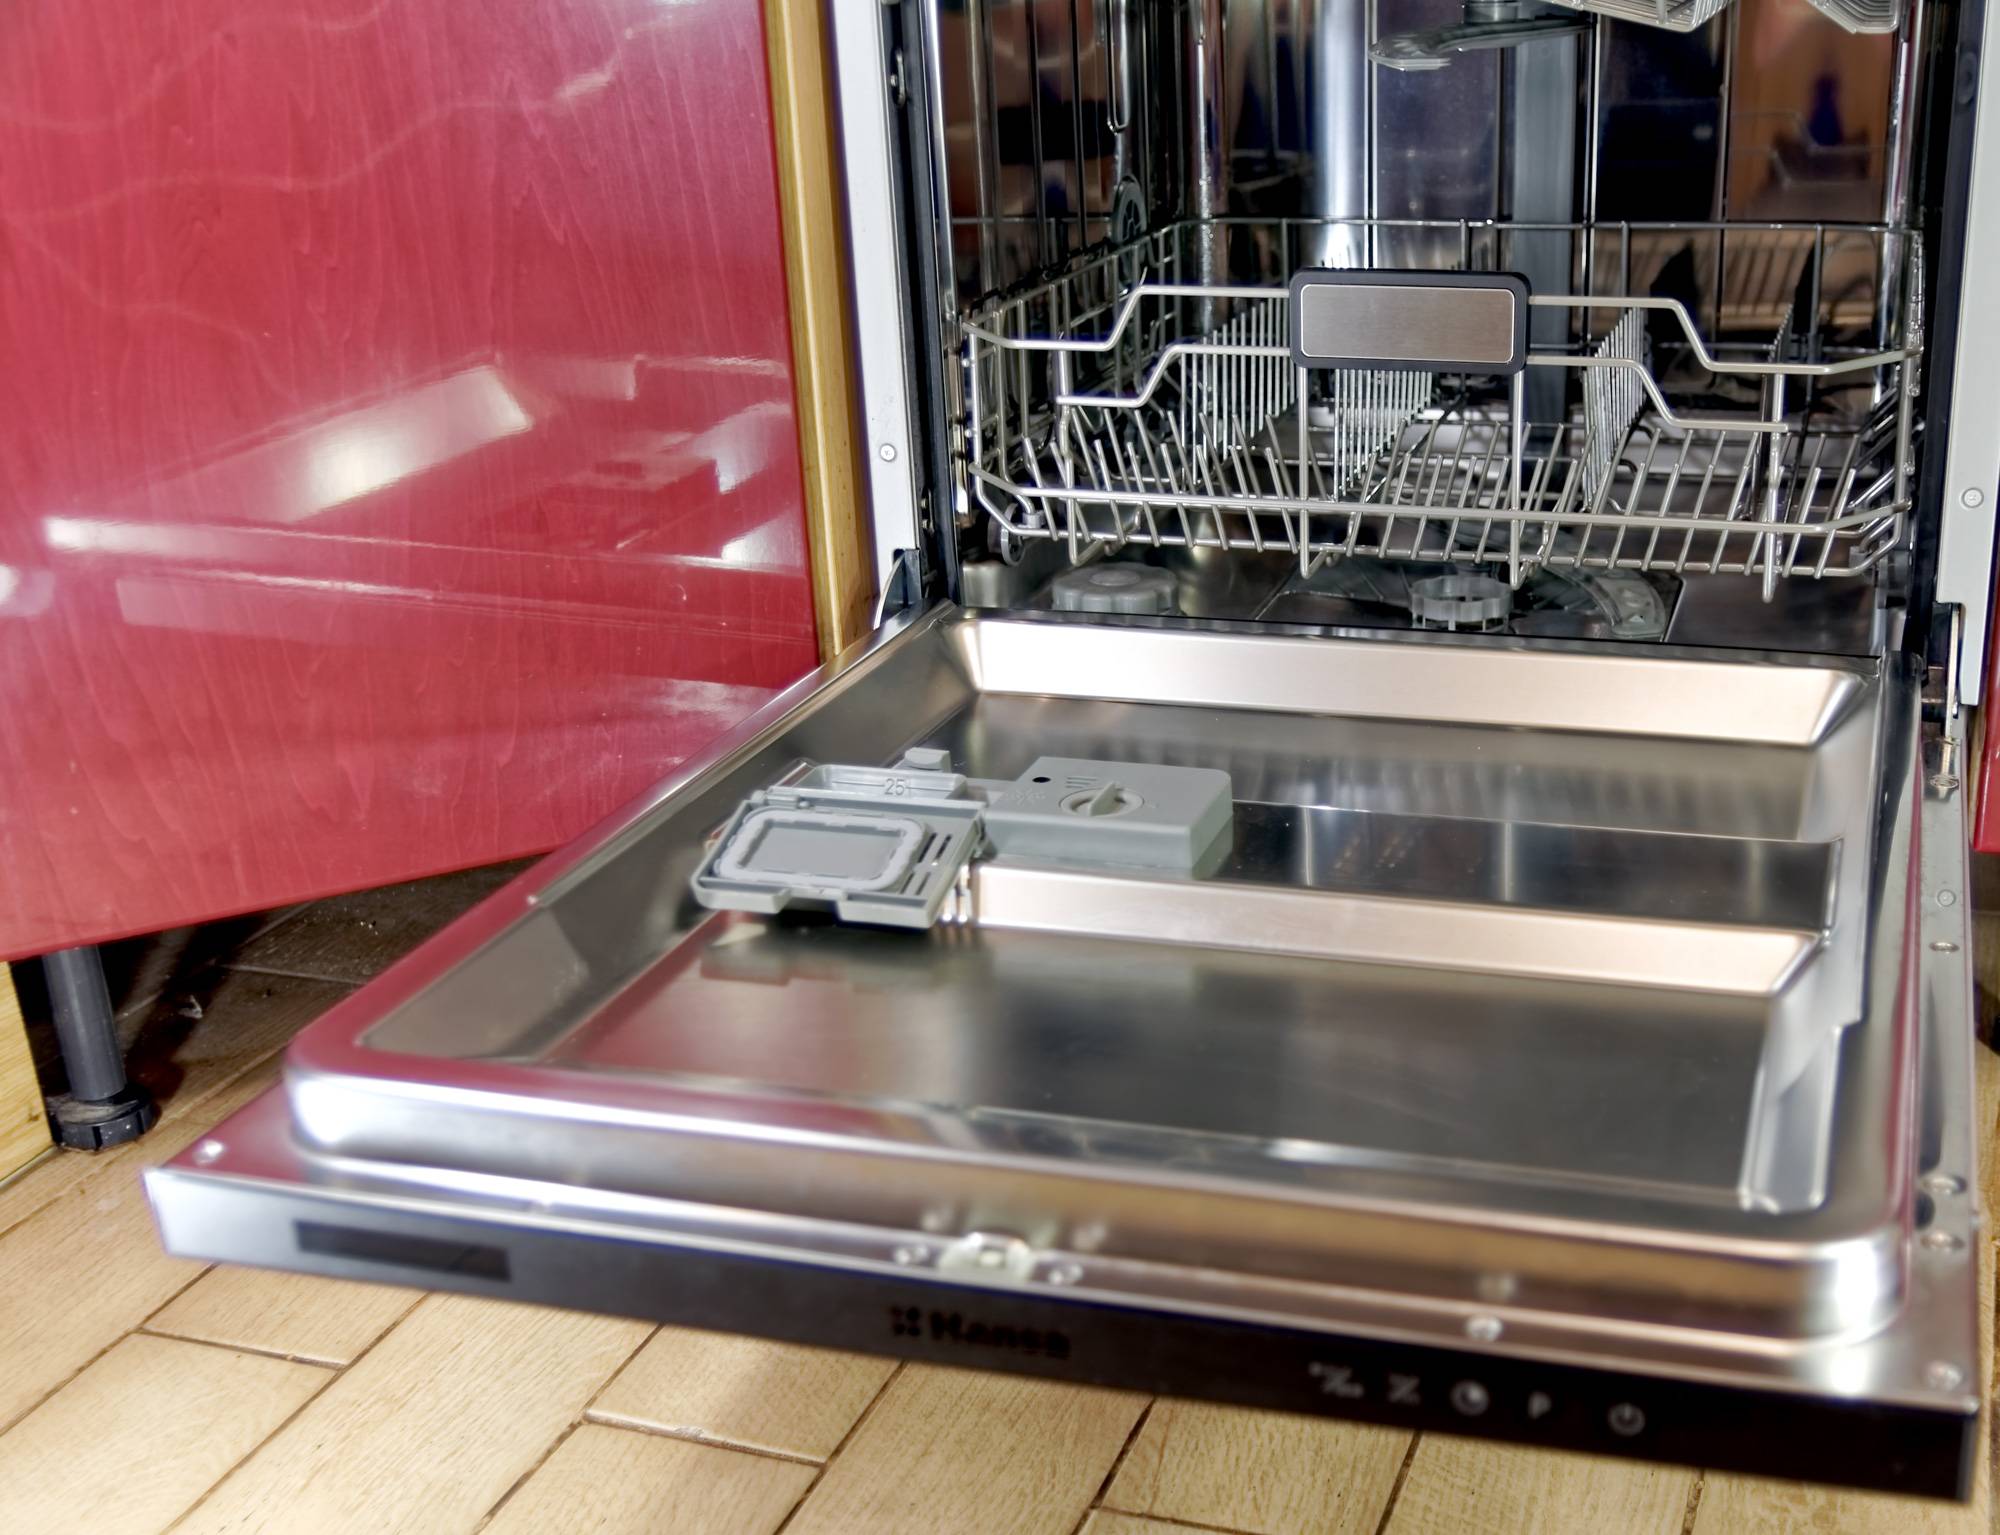 Первый запуск посудомоечной машины (включение посудомойки первый раз, пмм) — как запустить, бош, электролюкс, хотпоинт аристон, мидеа, средство, использование